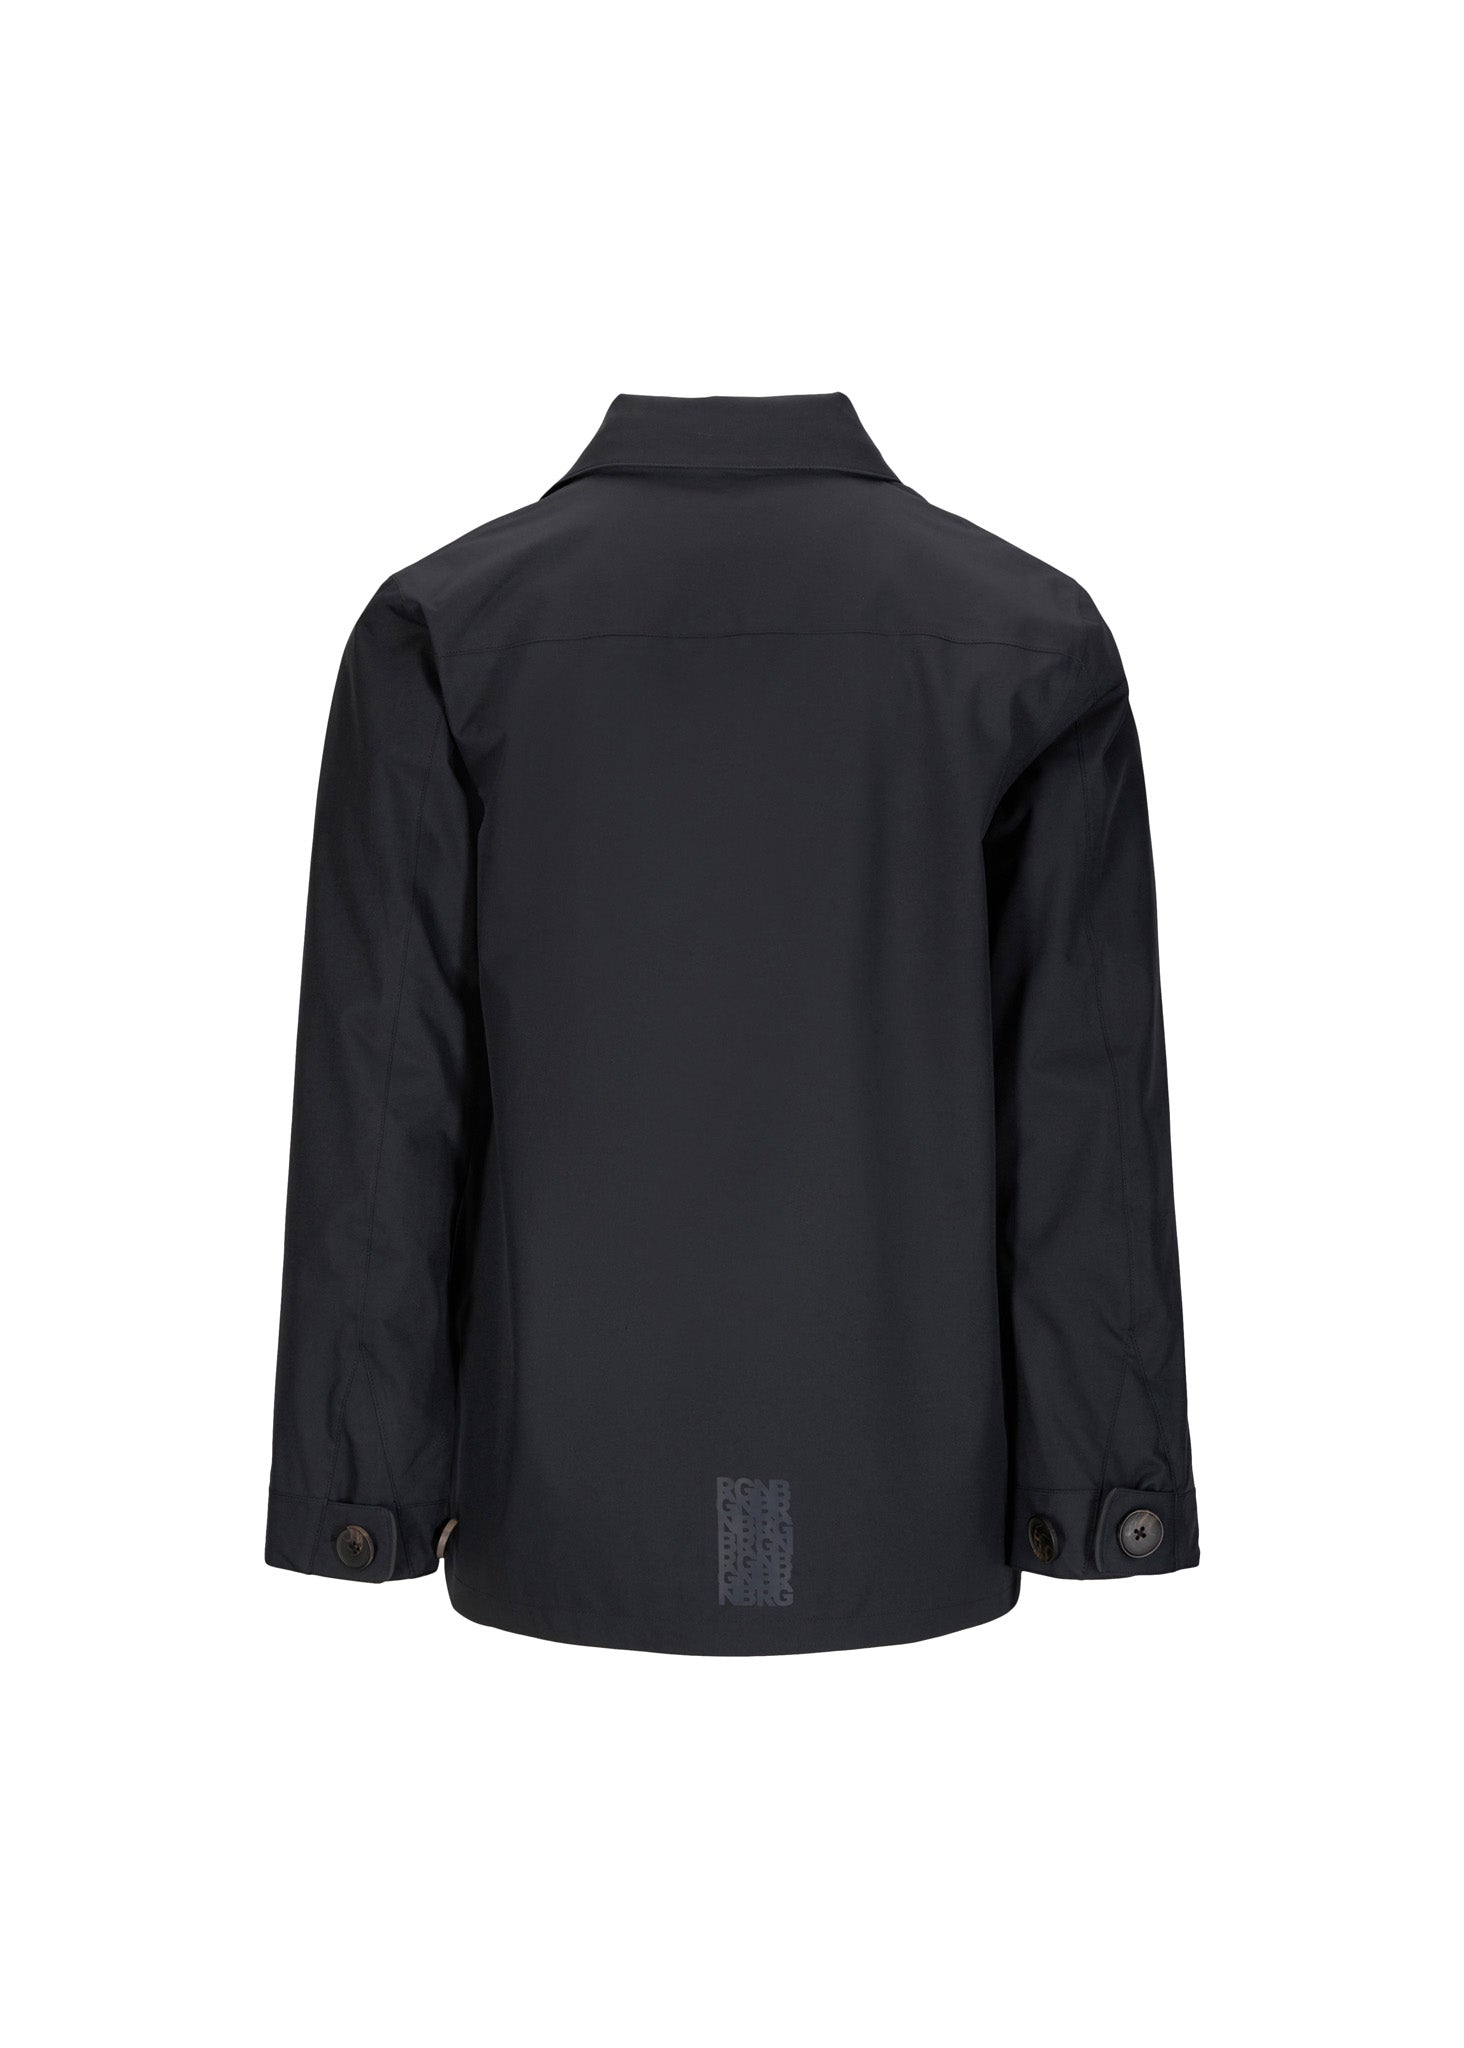 BRGN Syklon Overshirt Jacket Coats 095 New Black